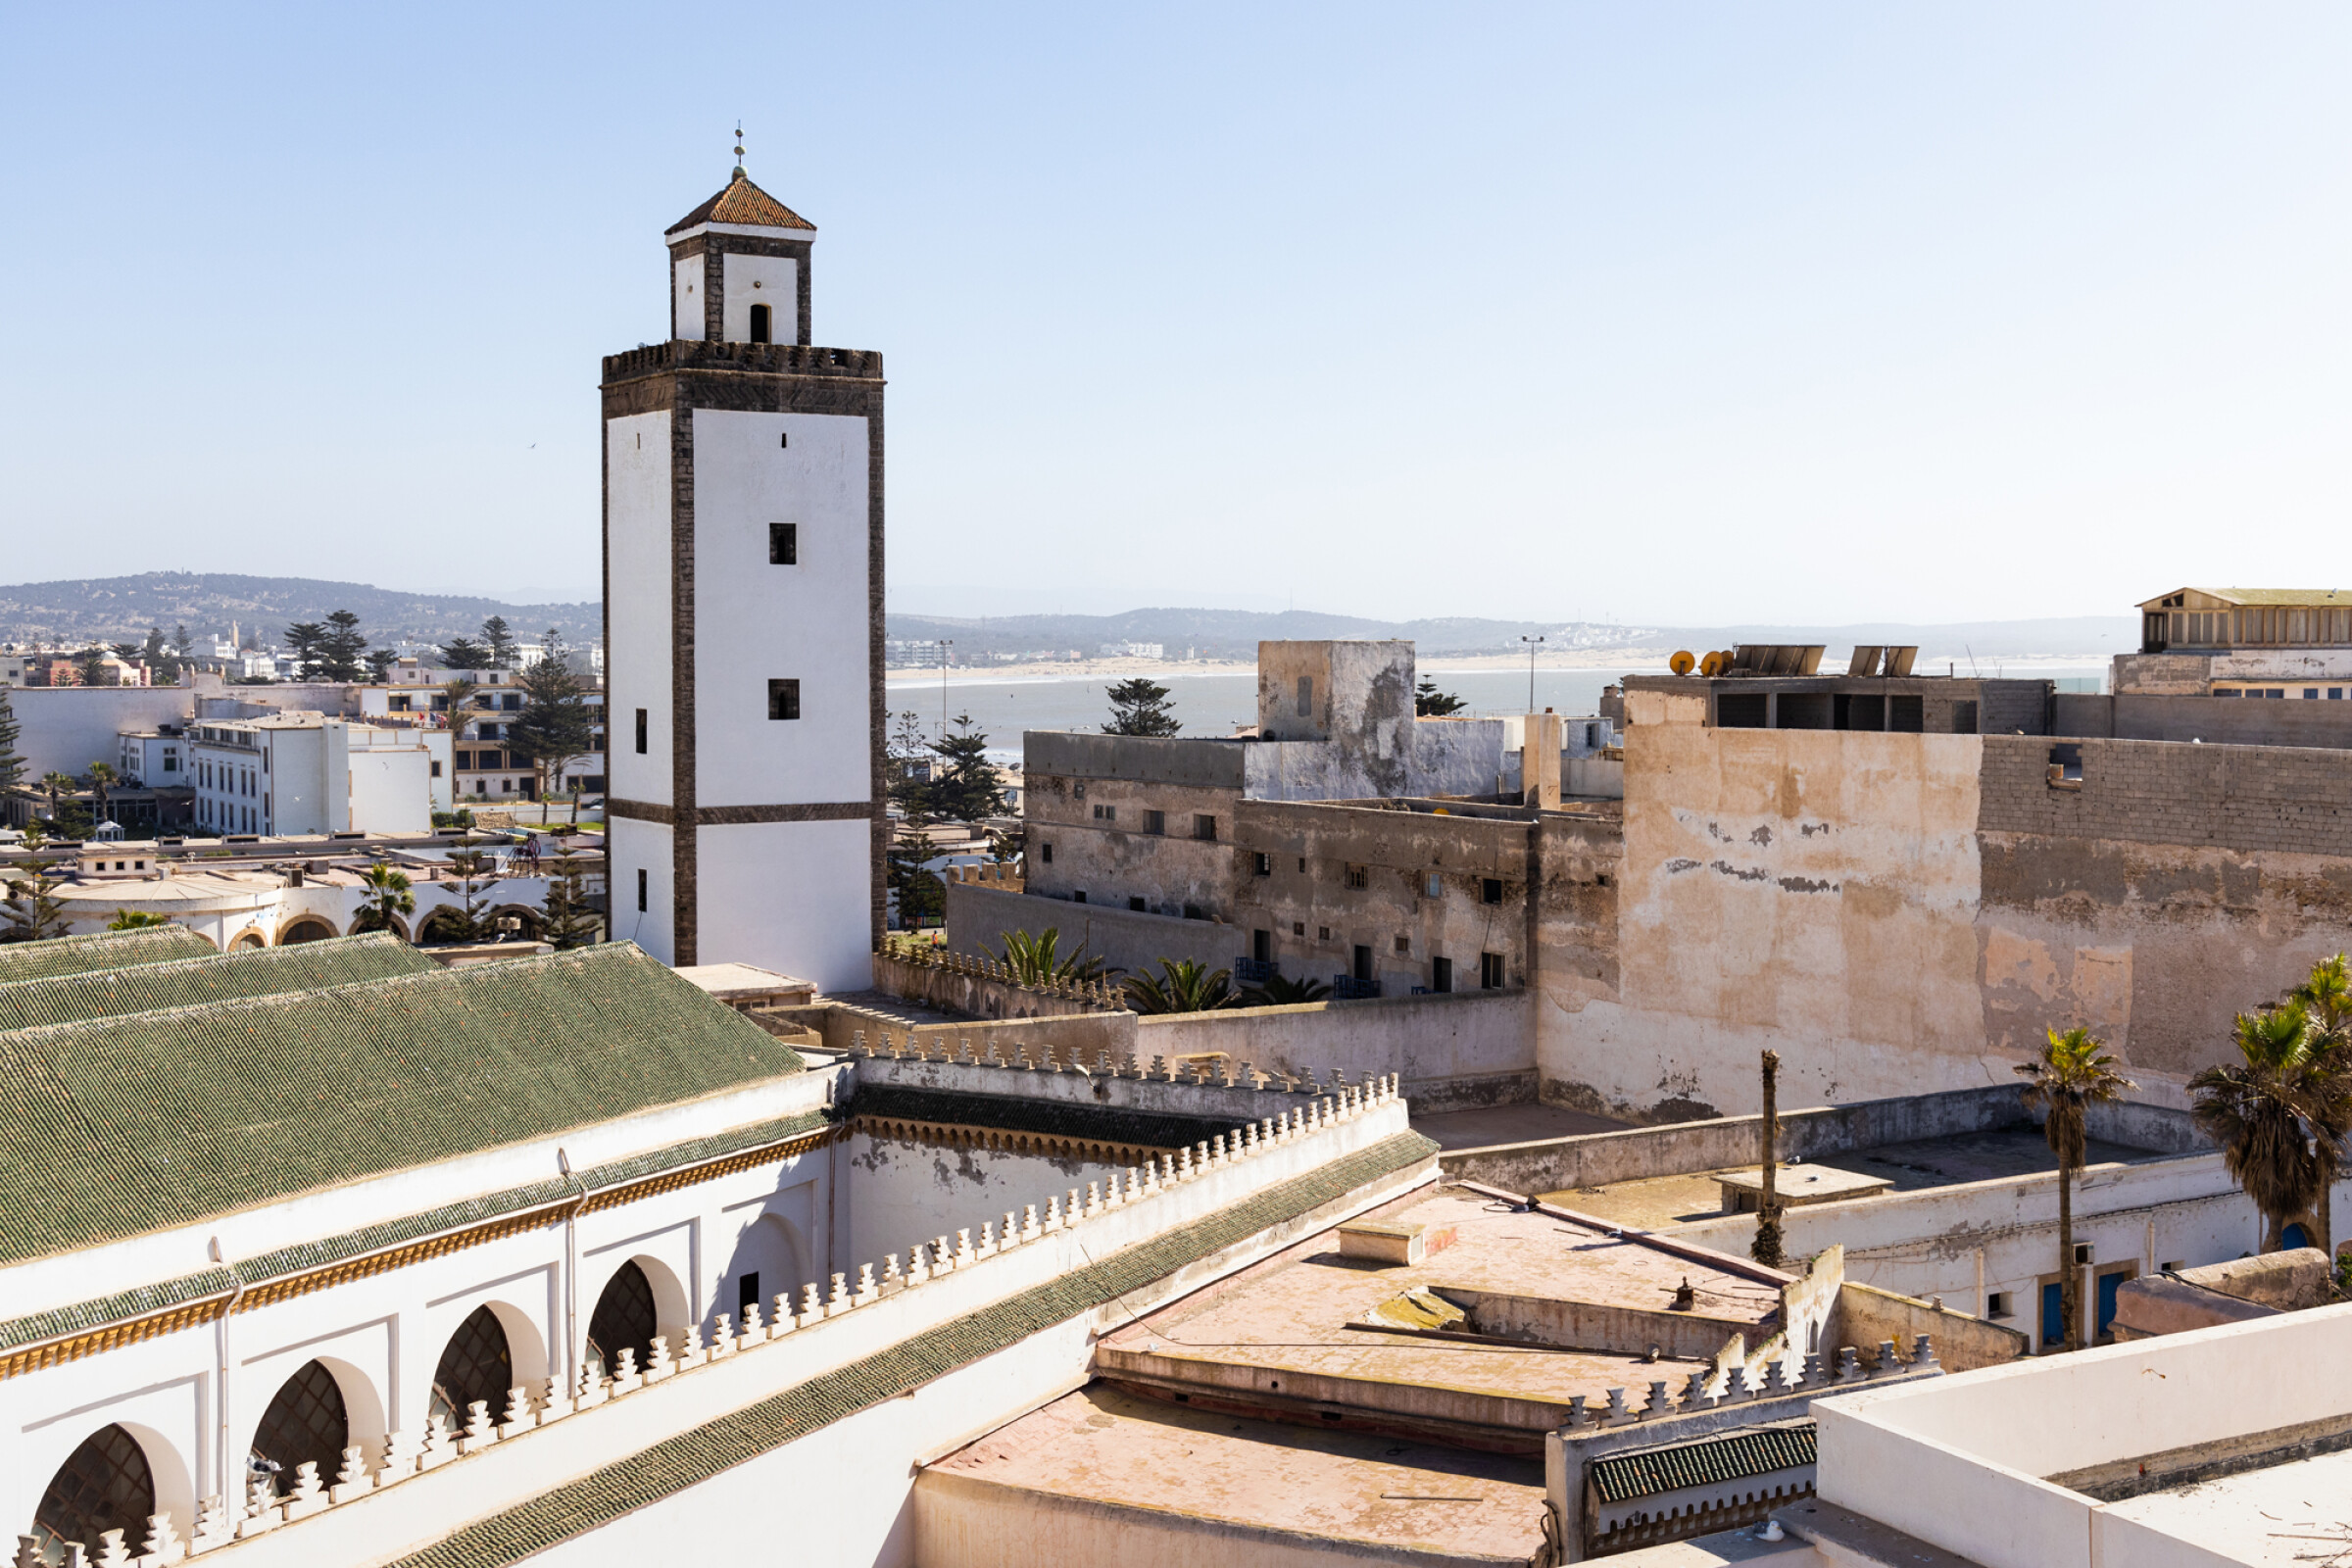 Marokko öffnet seine Grenzen wieder: Was Sie wissen müssen und Tipps für Reisen in Marokko